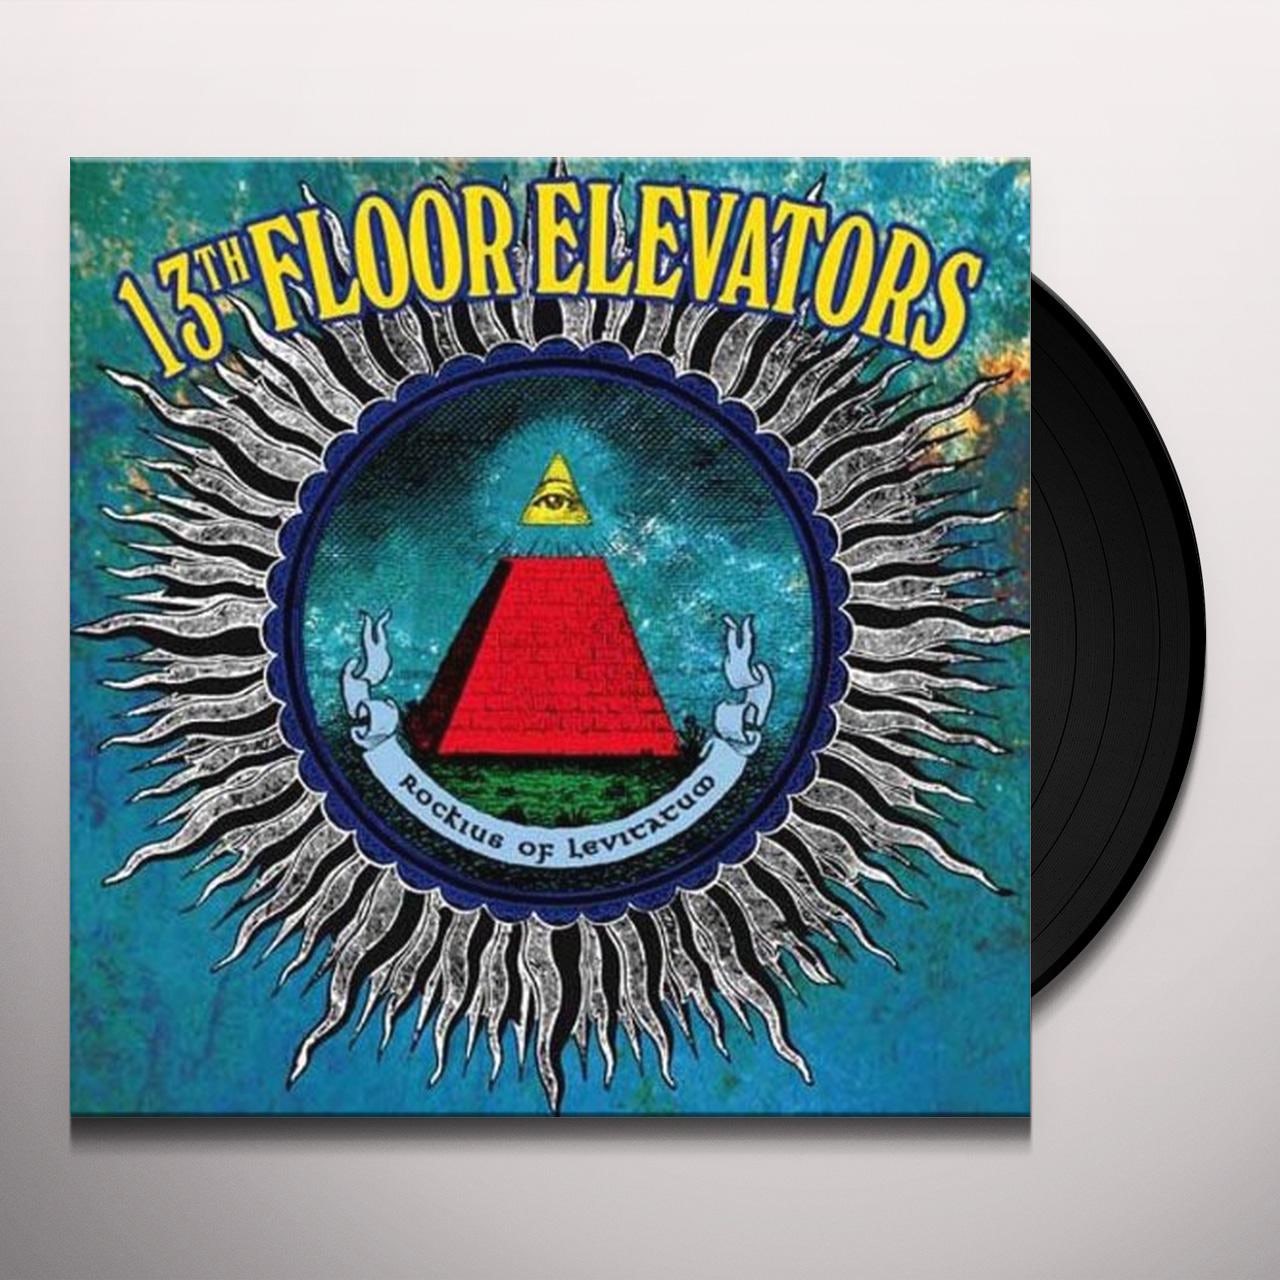 13th Floor Elevators - Rockius Of Levitatum